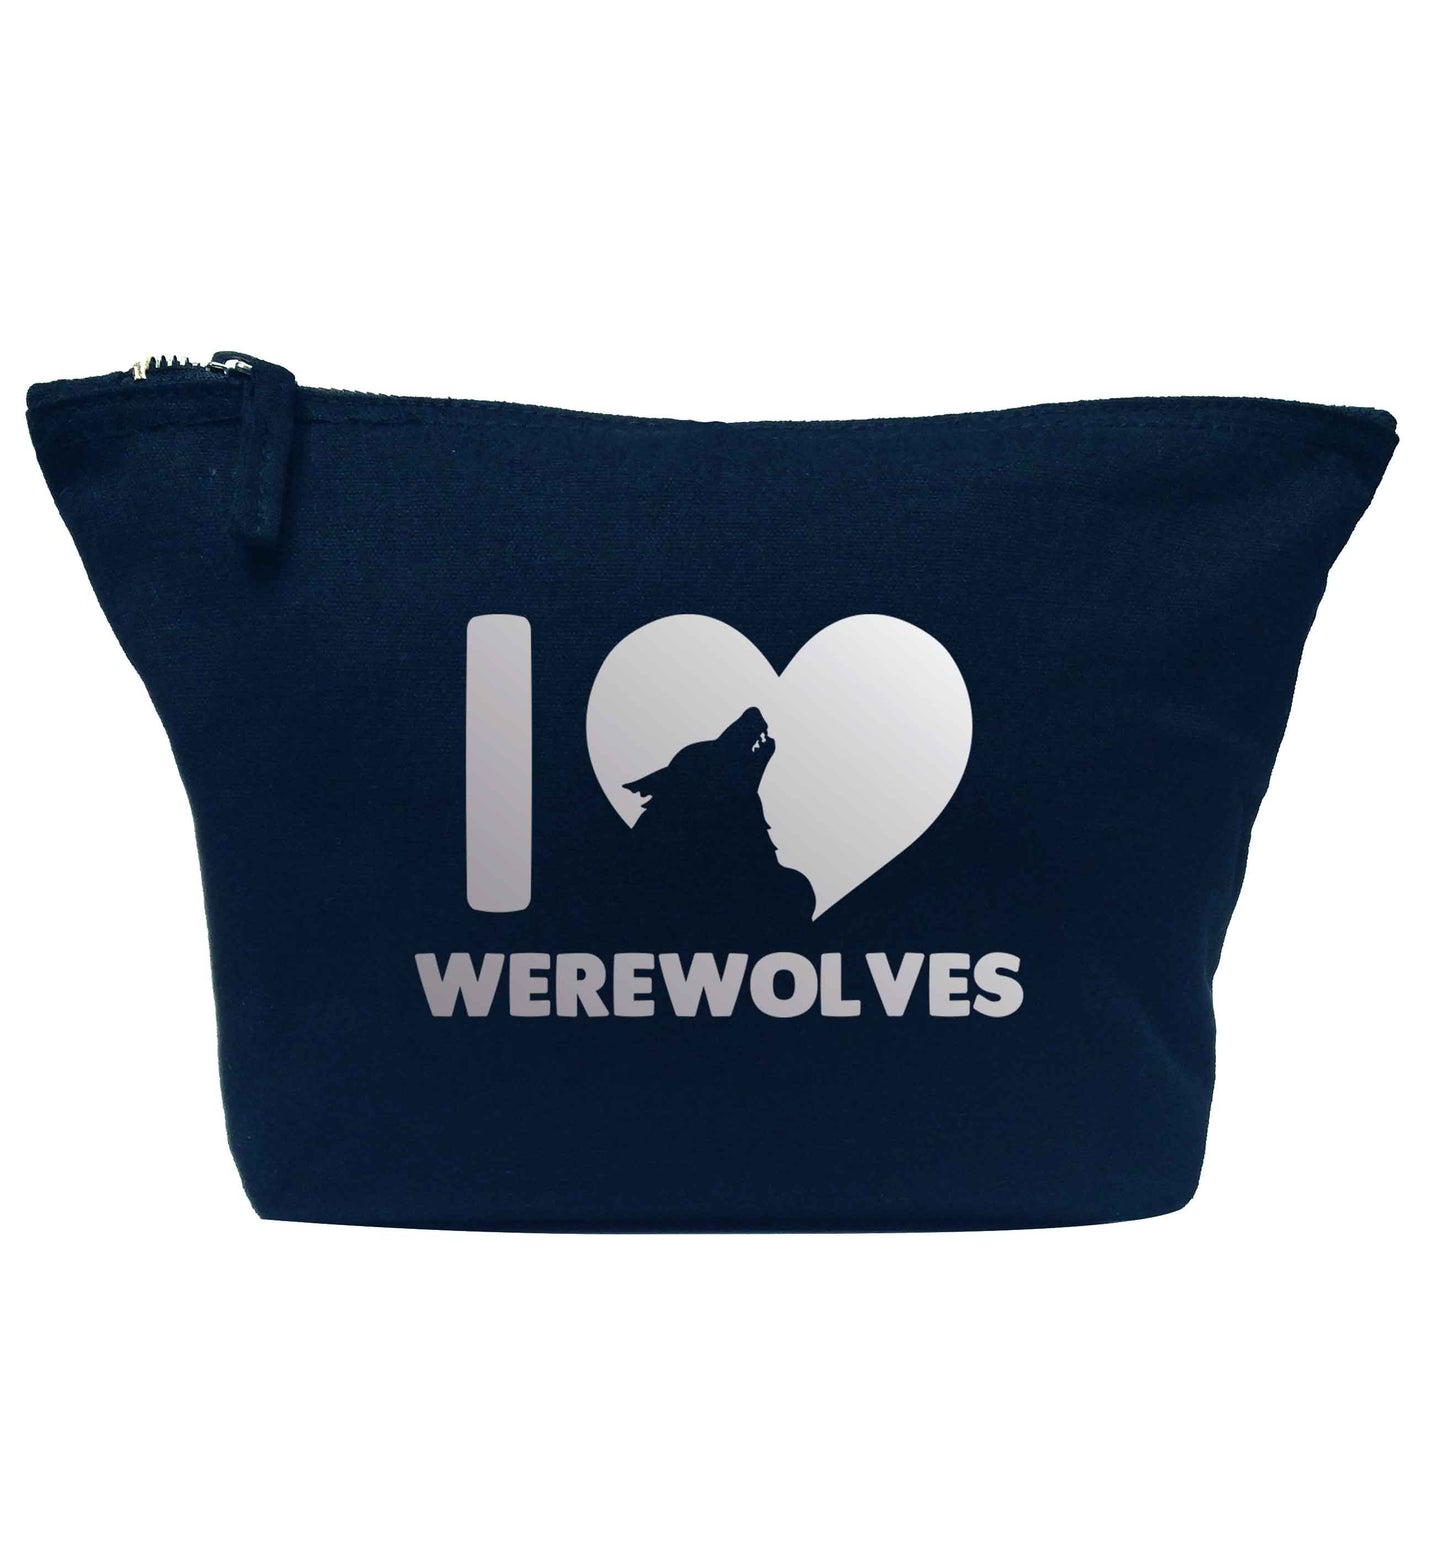 I love werewolves navy makeup bag